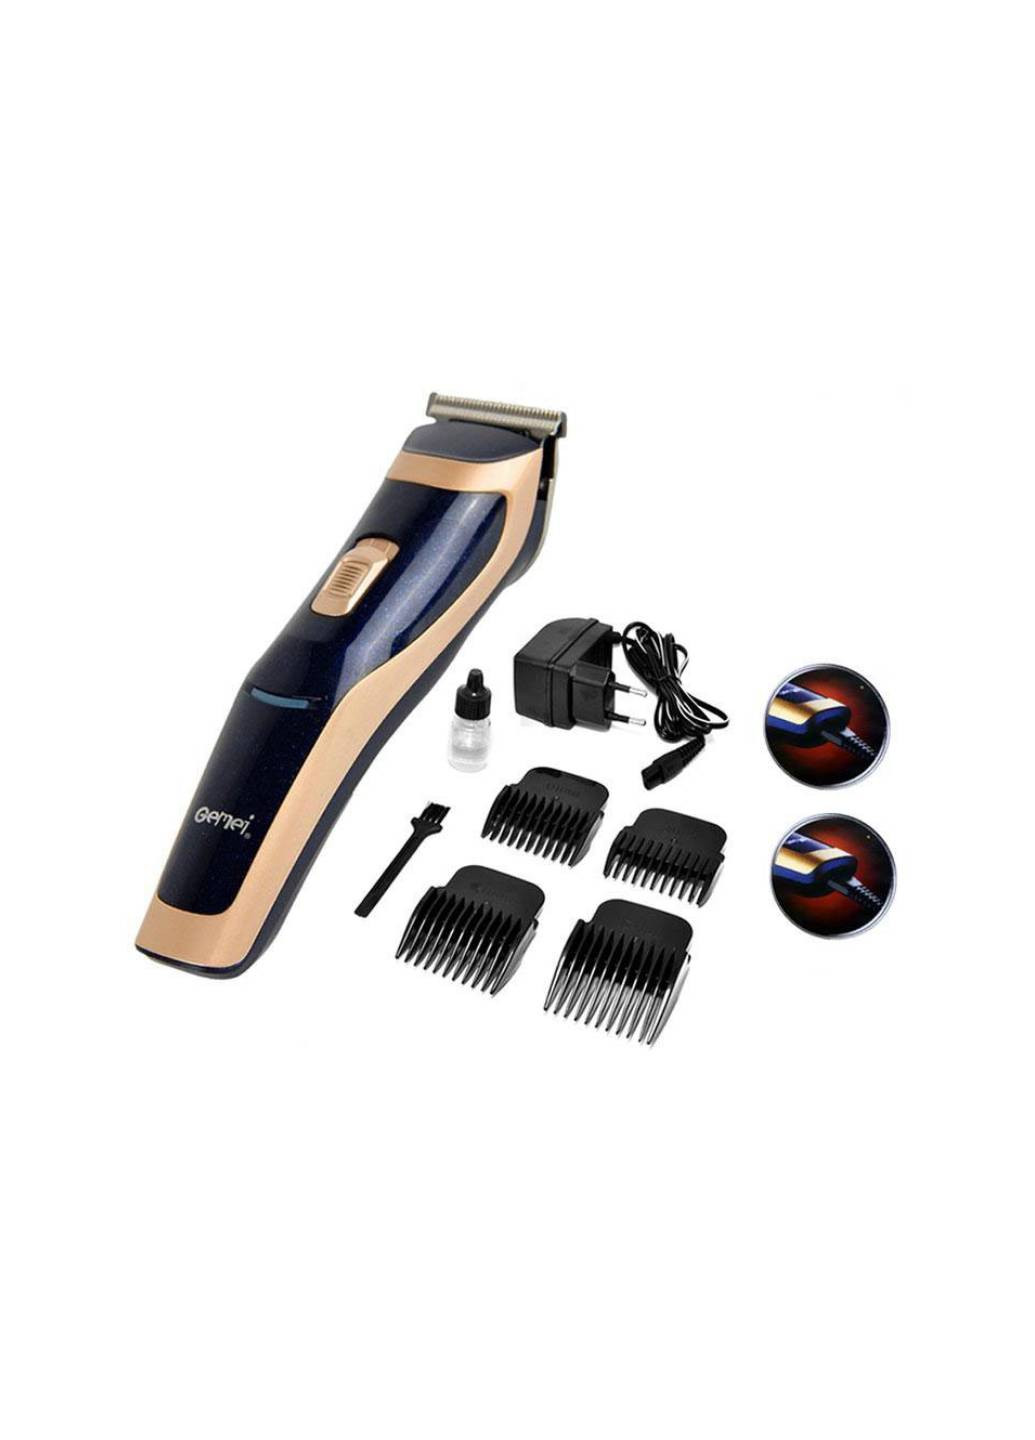 Машинка для стрижки волос GM-6005 Professional 3 Вт аккумуляторная титановые ножи + 4 насадки и щетка Gemei (254315737)